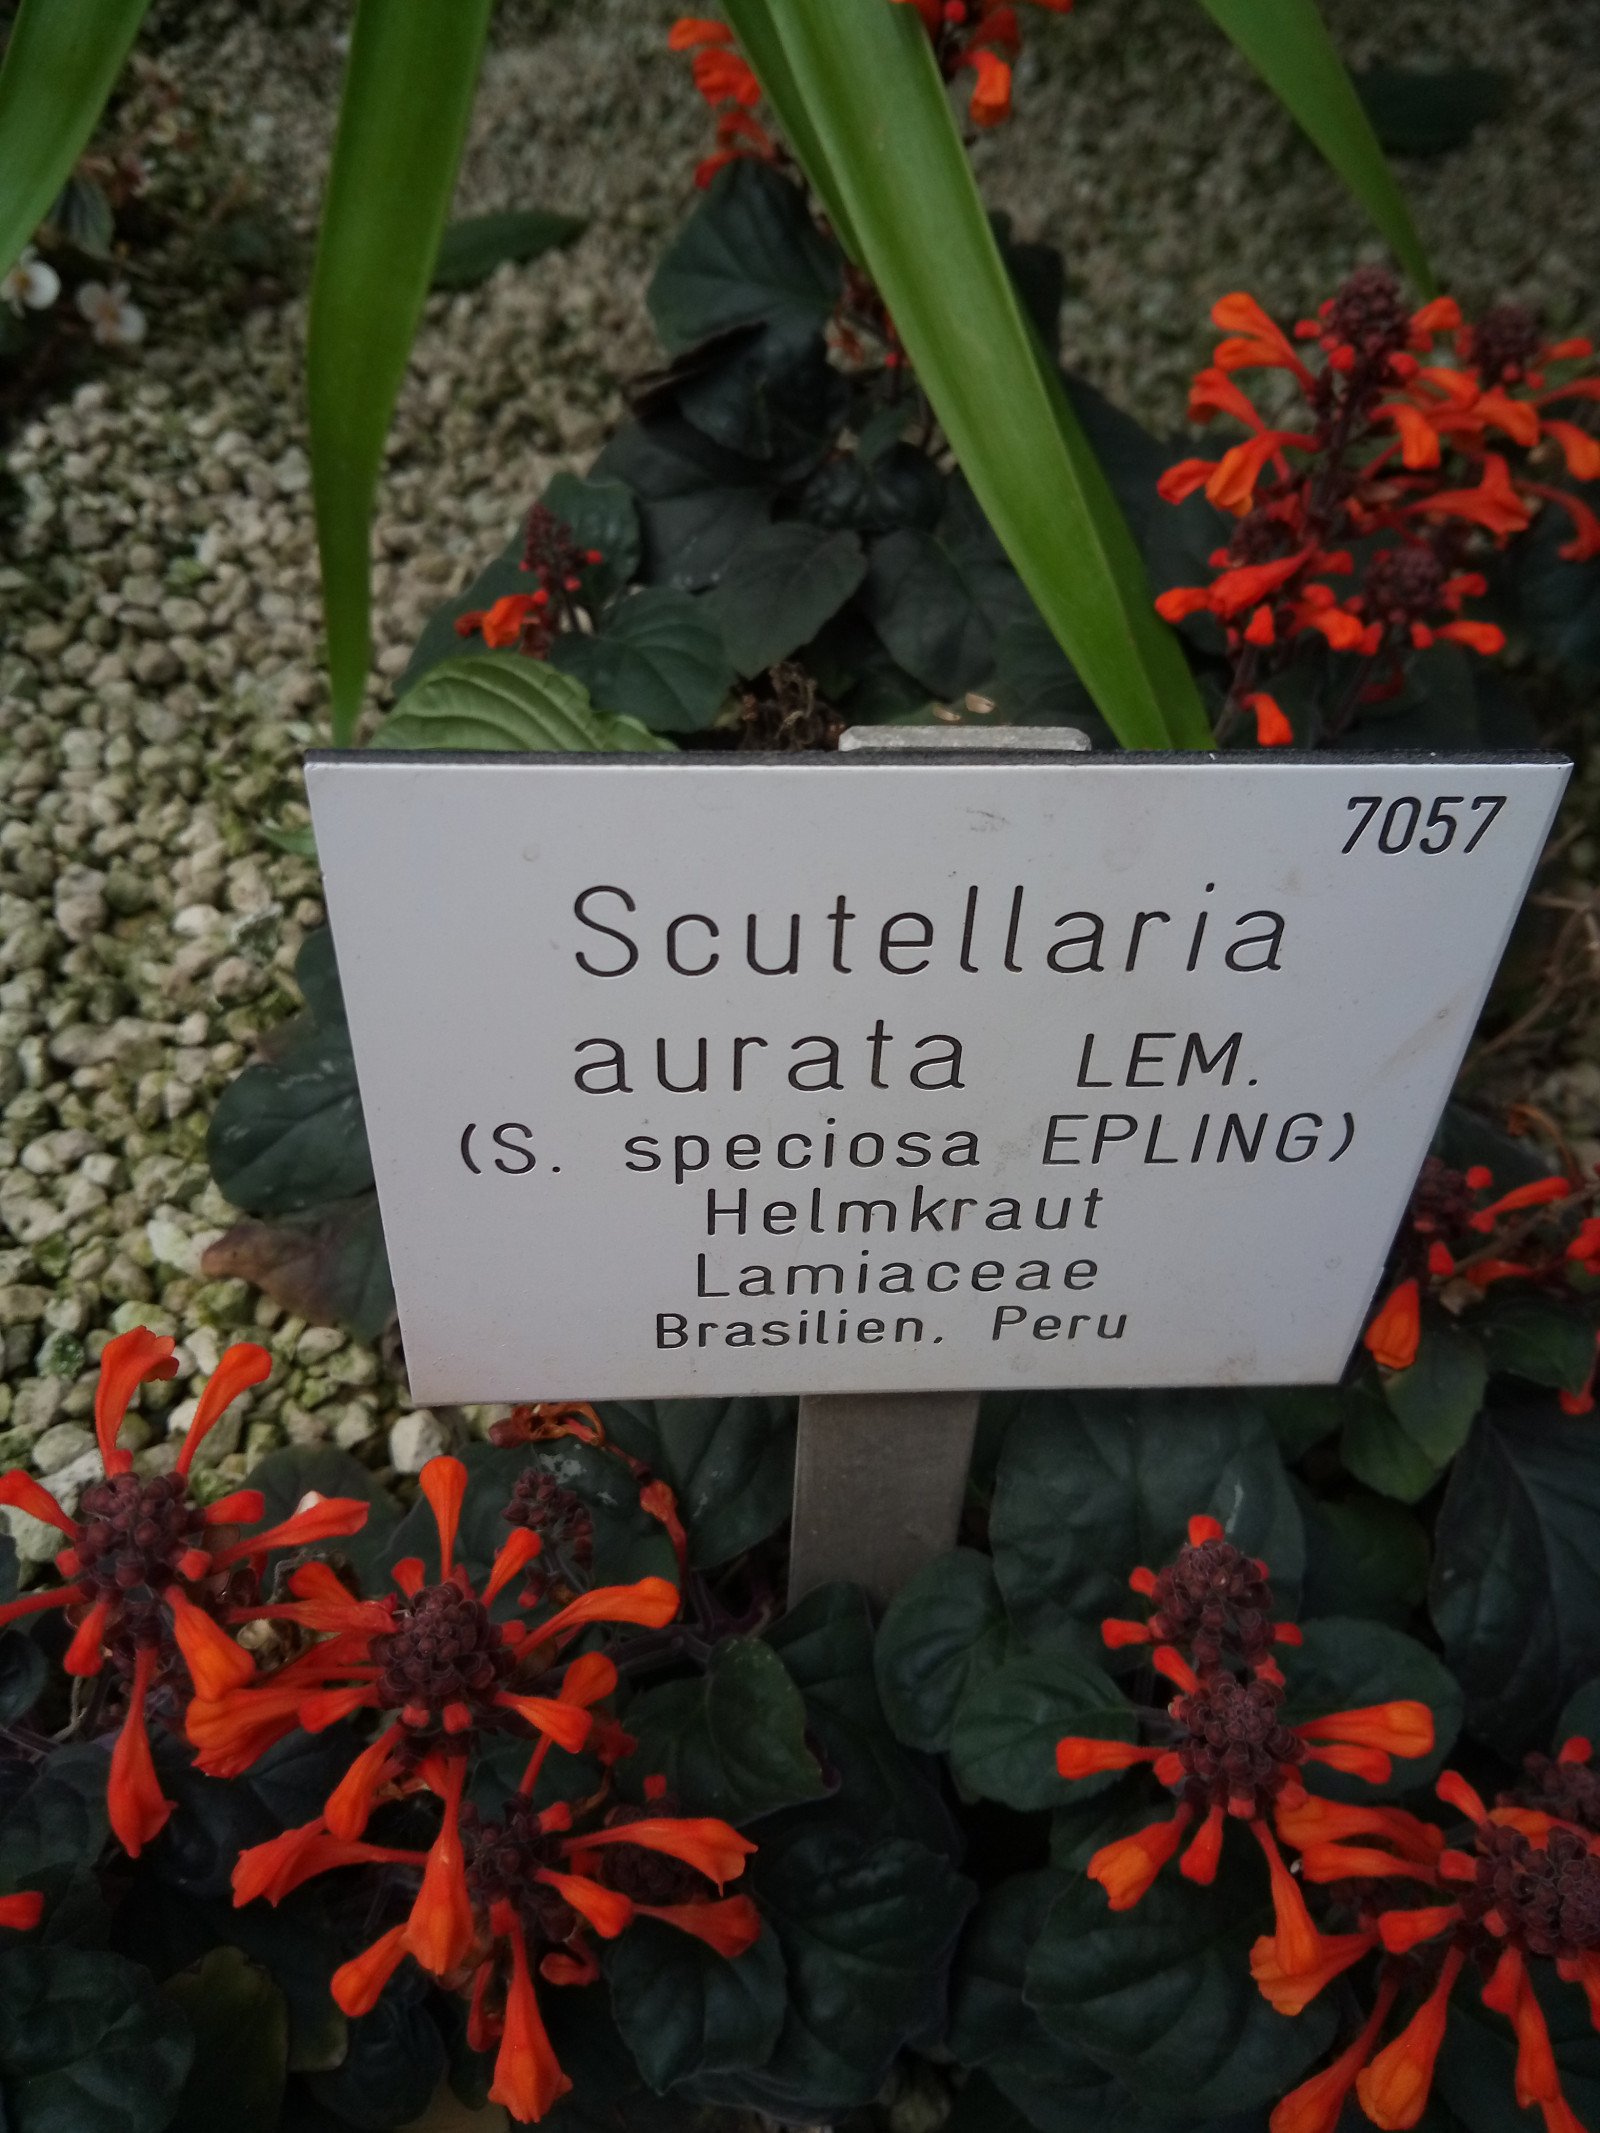 Scutellaria aurata - Entire plant